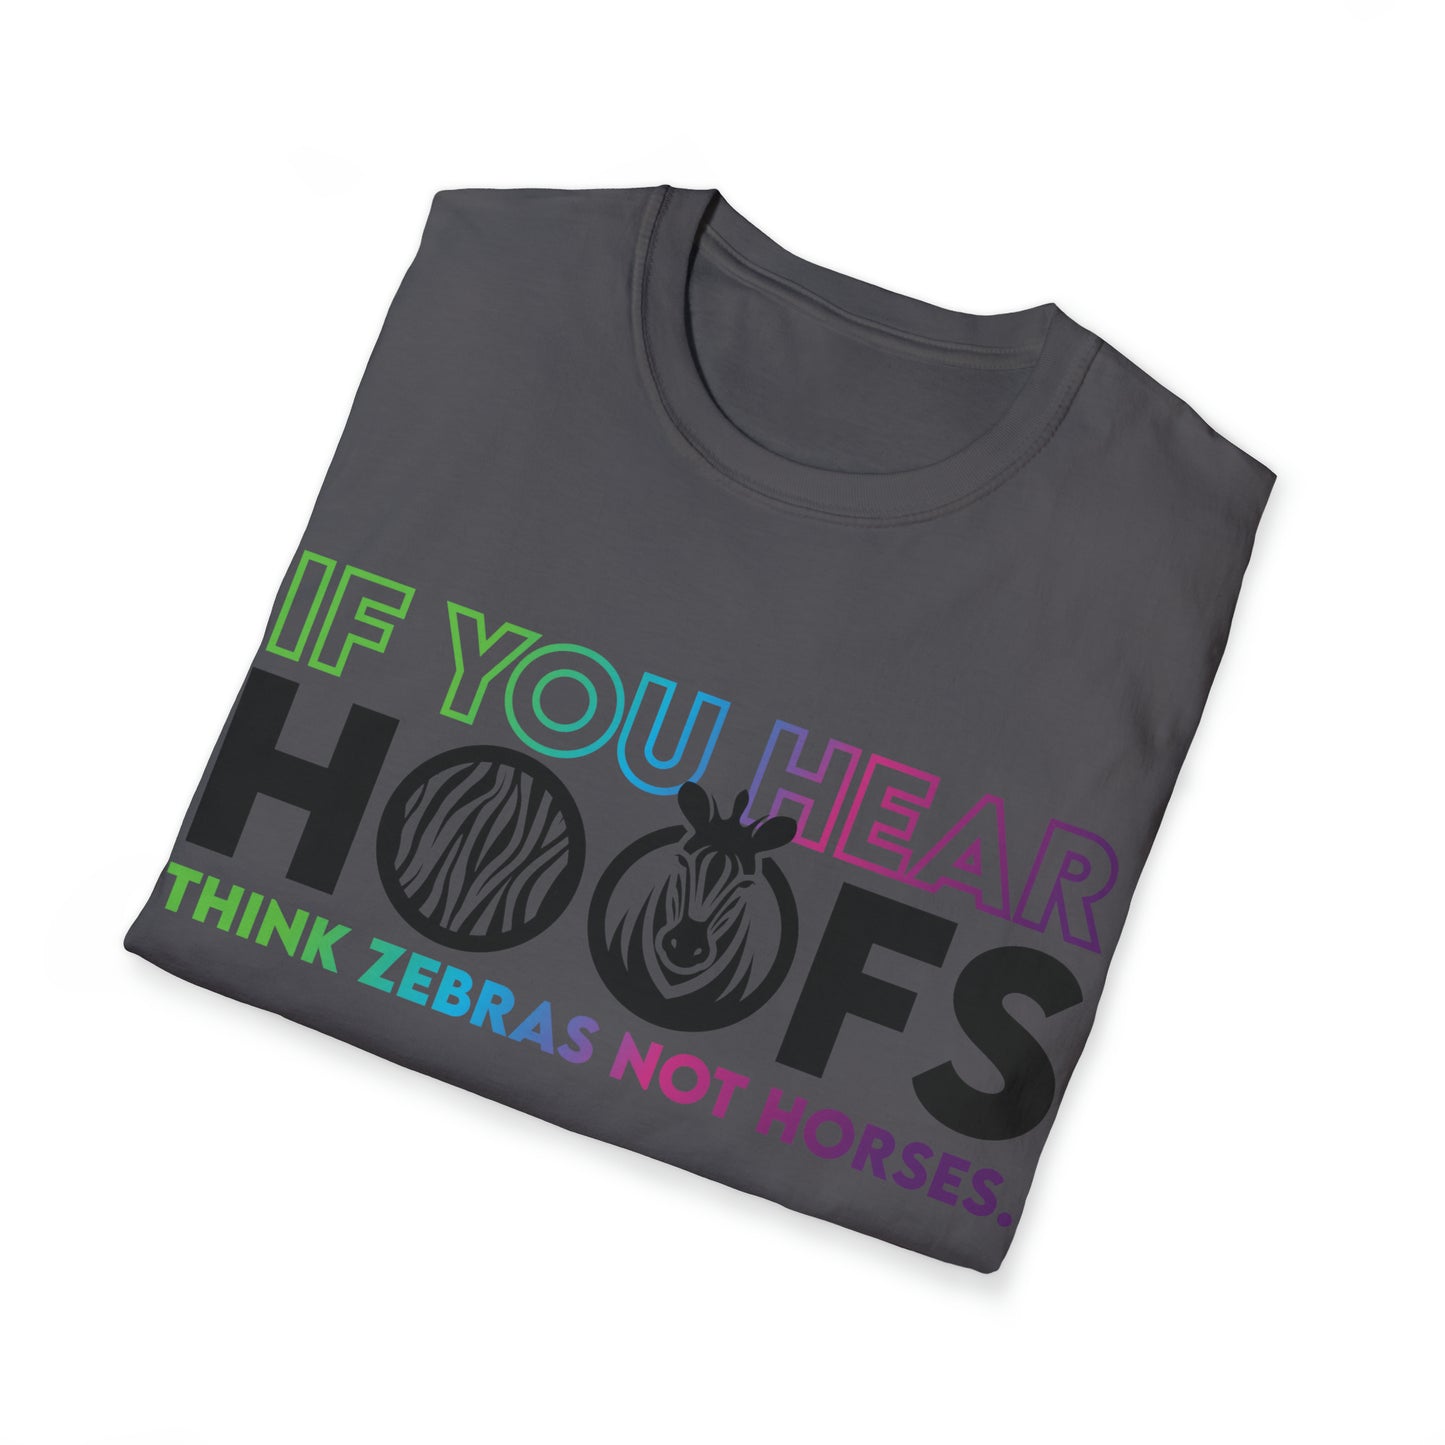 Rare Hoof v1.2 Unisex Softstyle T-Shirt